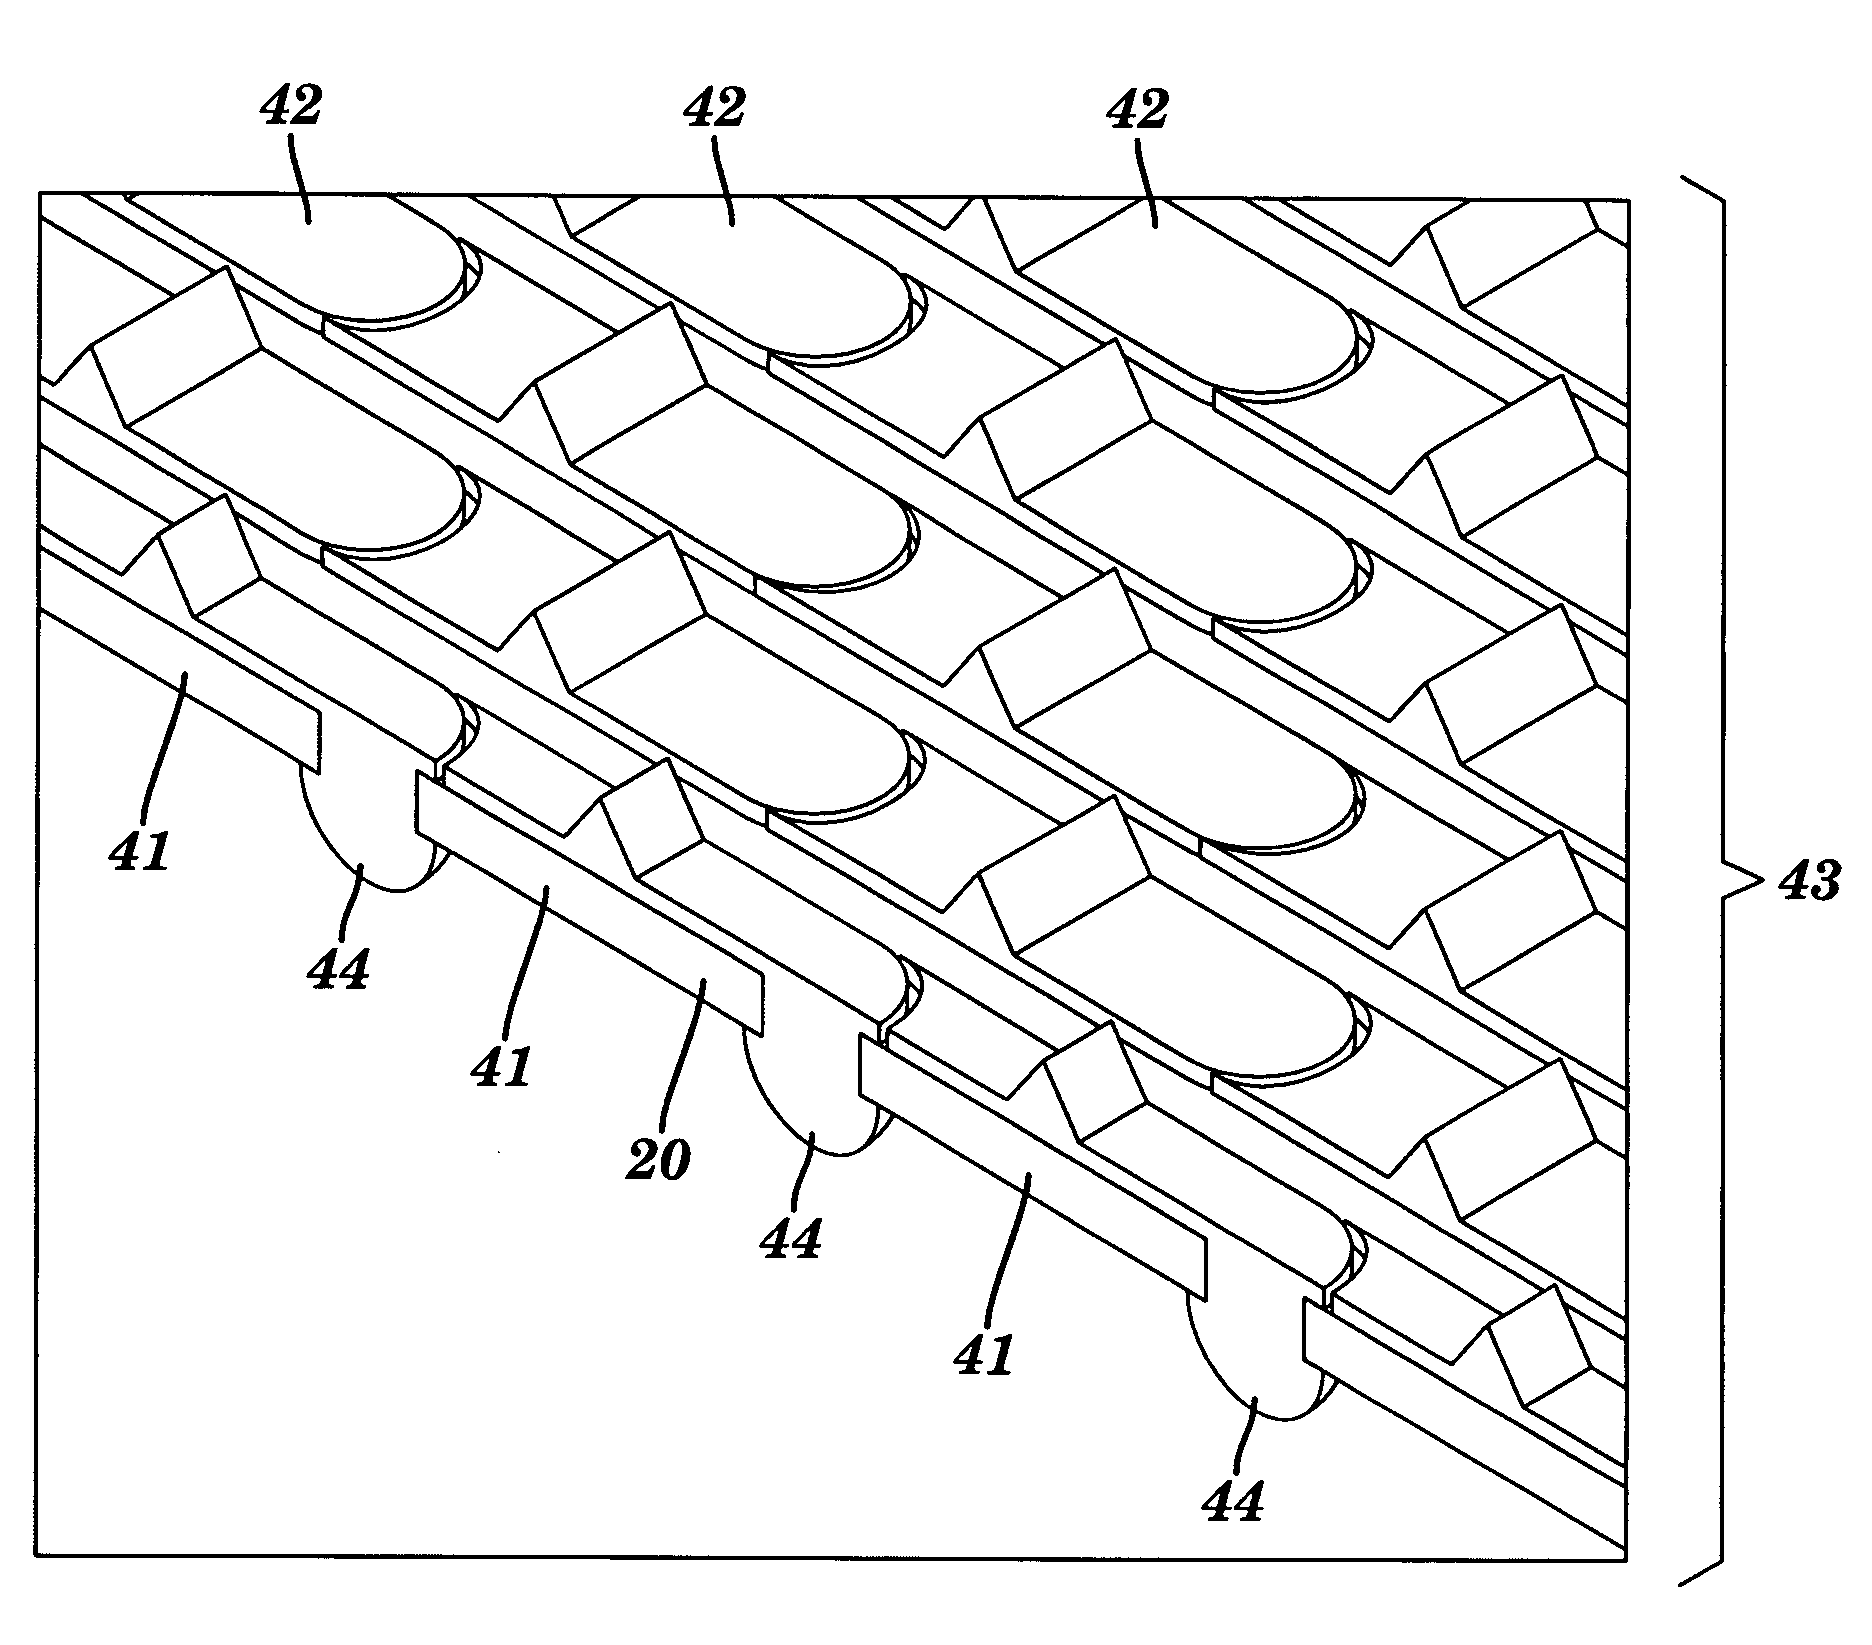 Compliant membrane probe